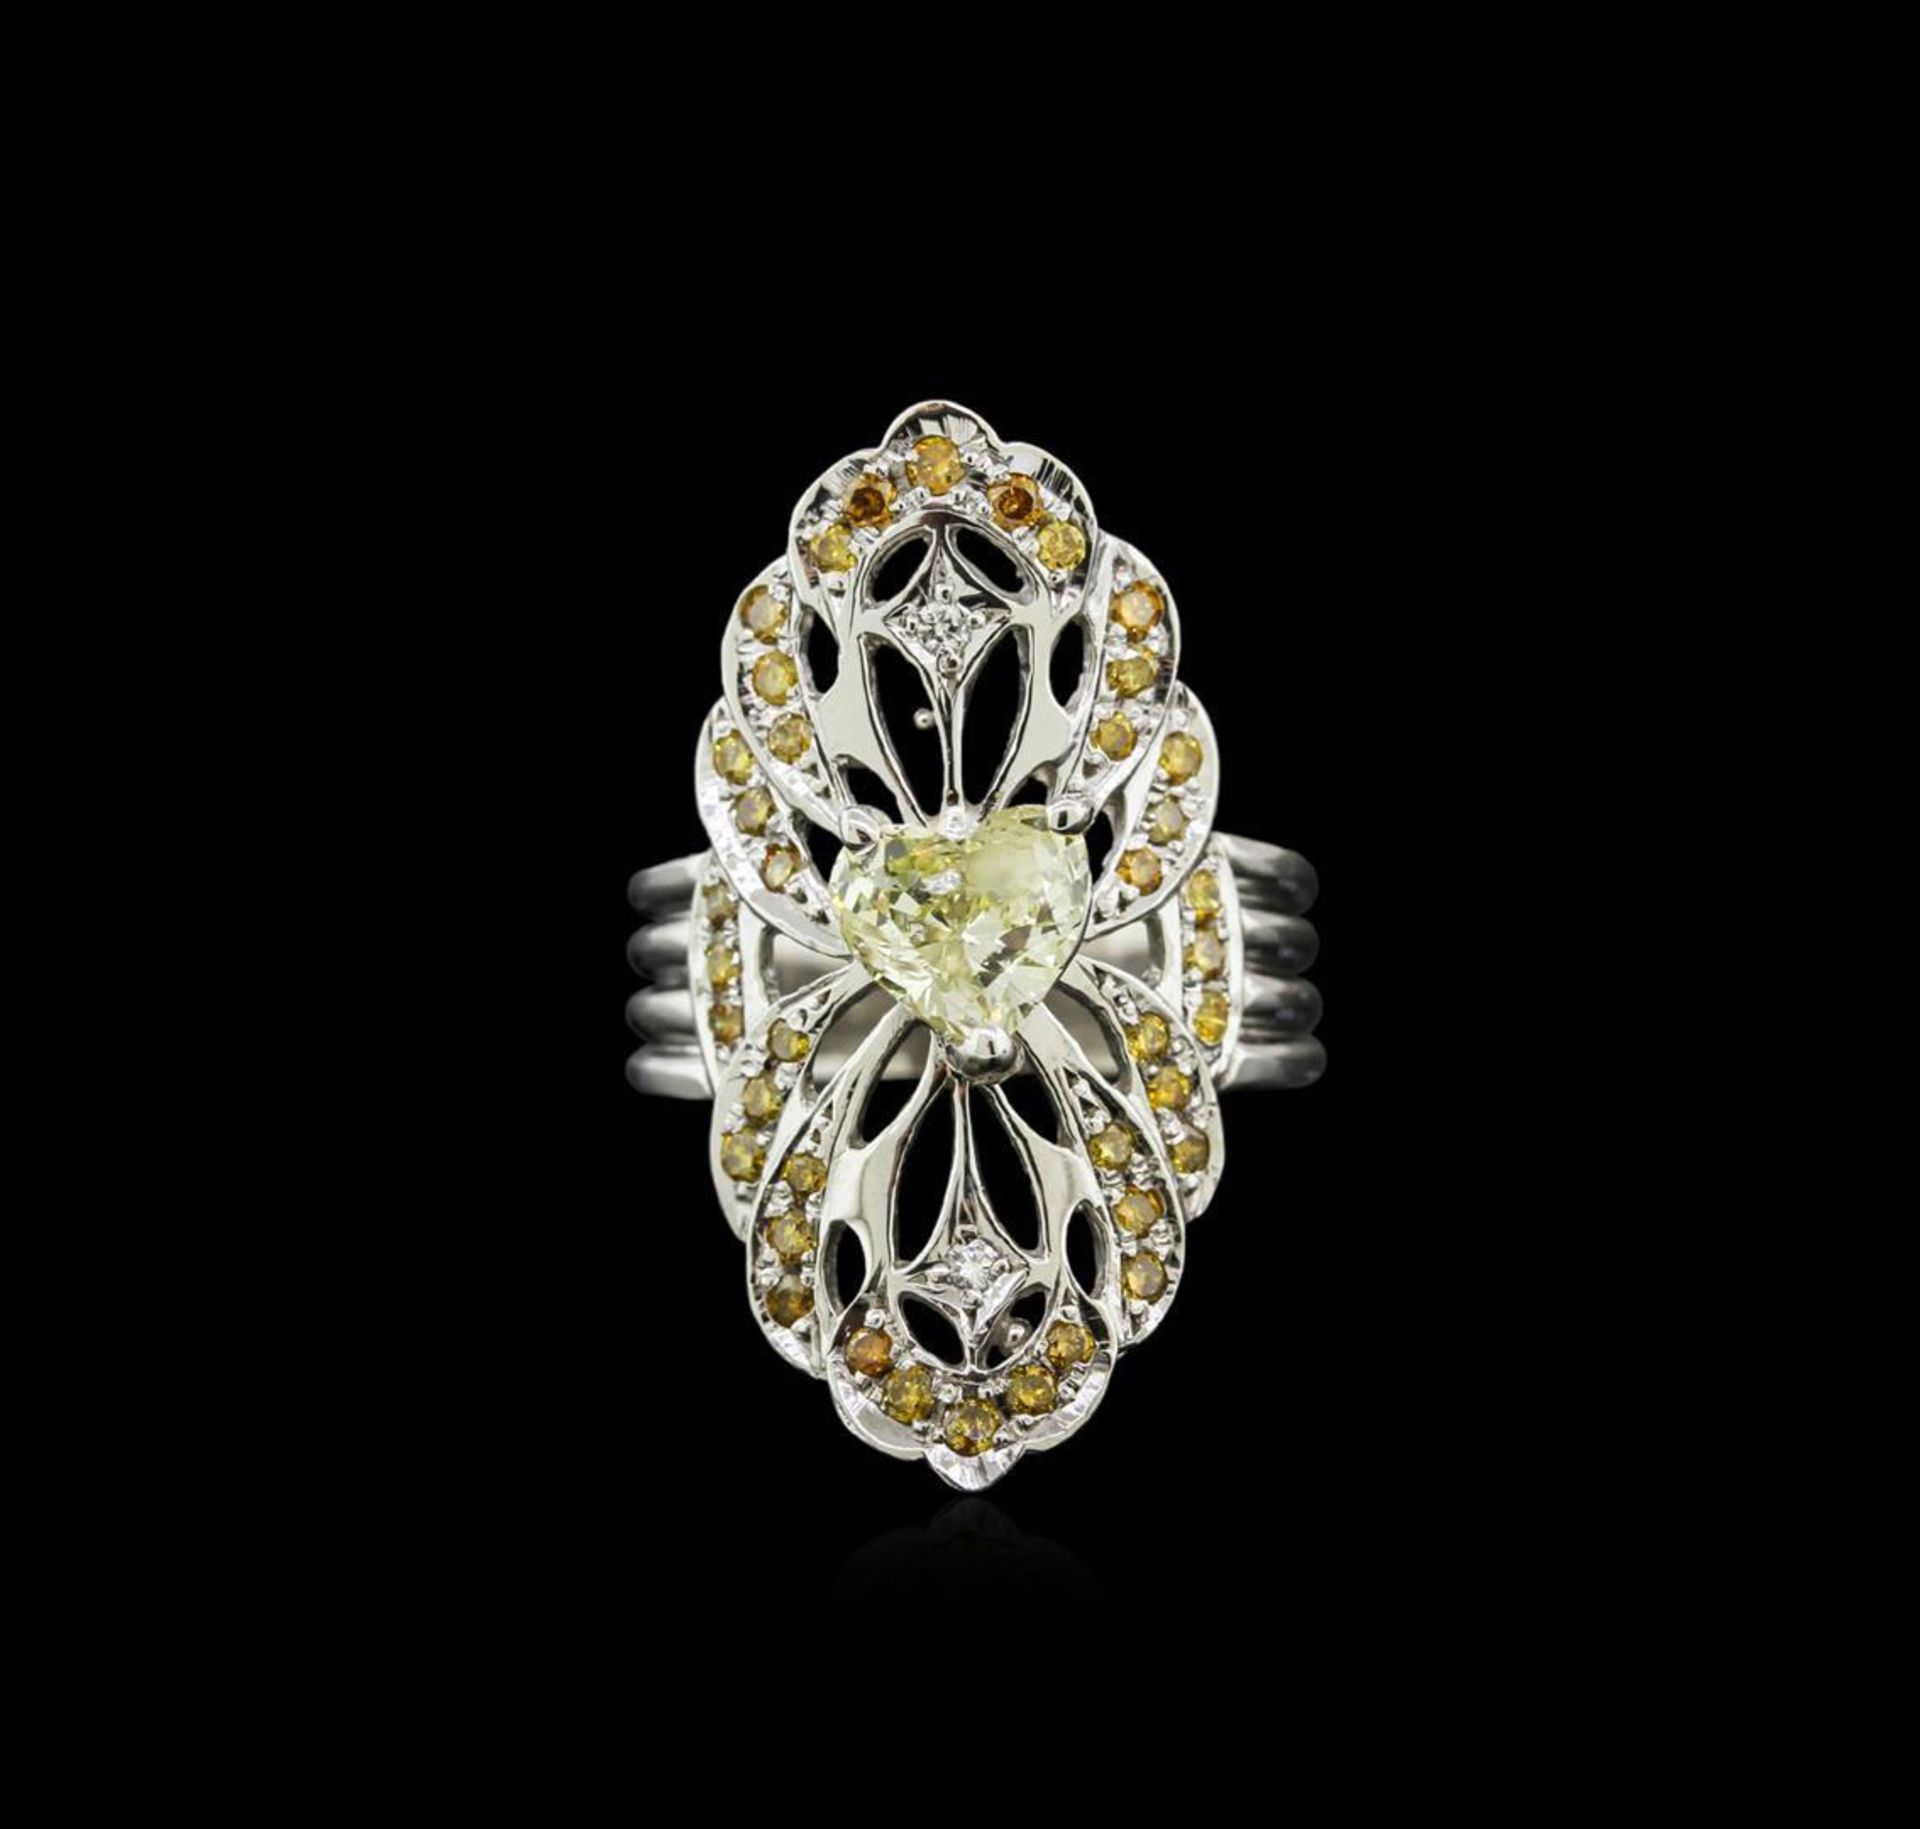 GIA Cert 1.48 ctw Diamond Ring - 14KT White Gold - Image 2 of 5